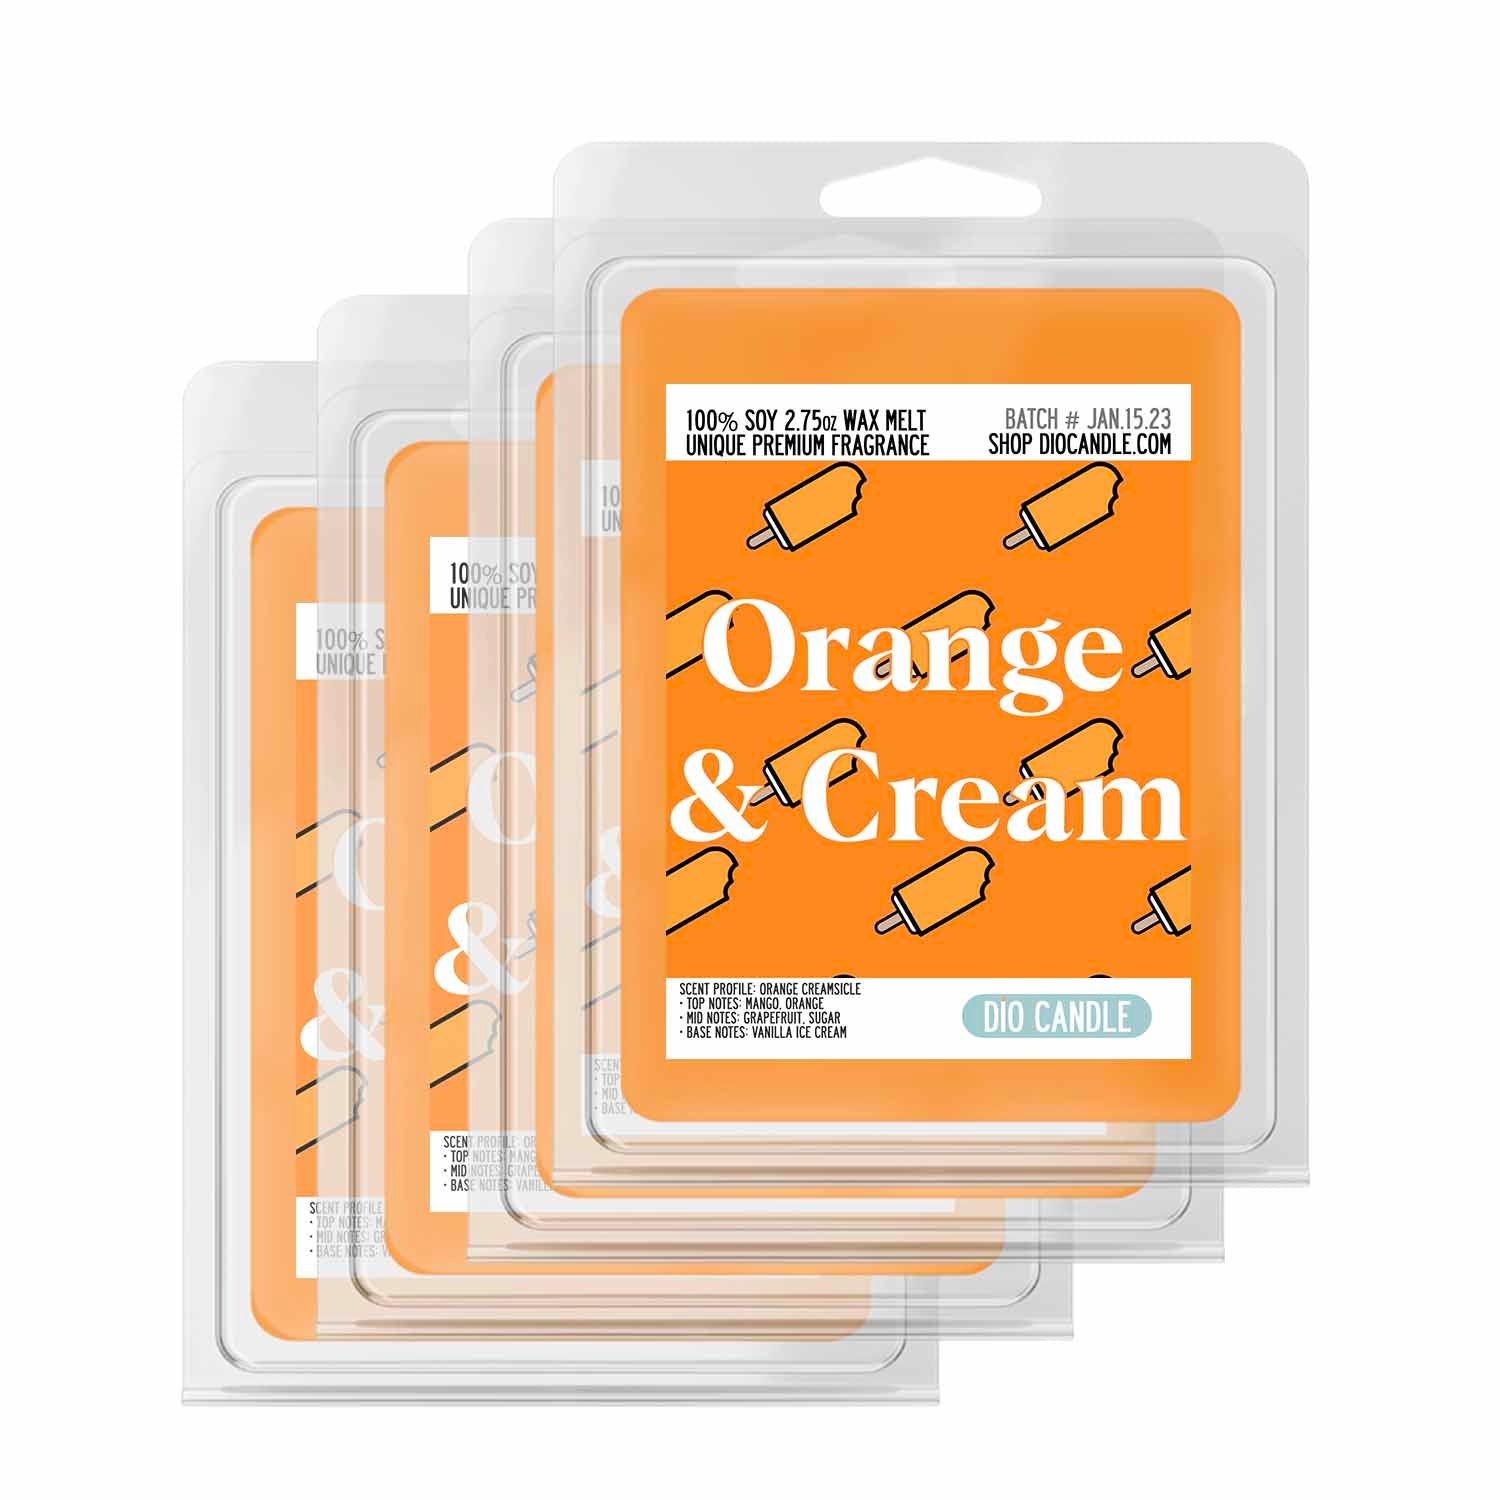 Orange Vanilla Aromatherapy - Cleveland Candle Company